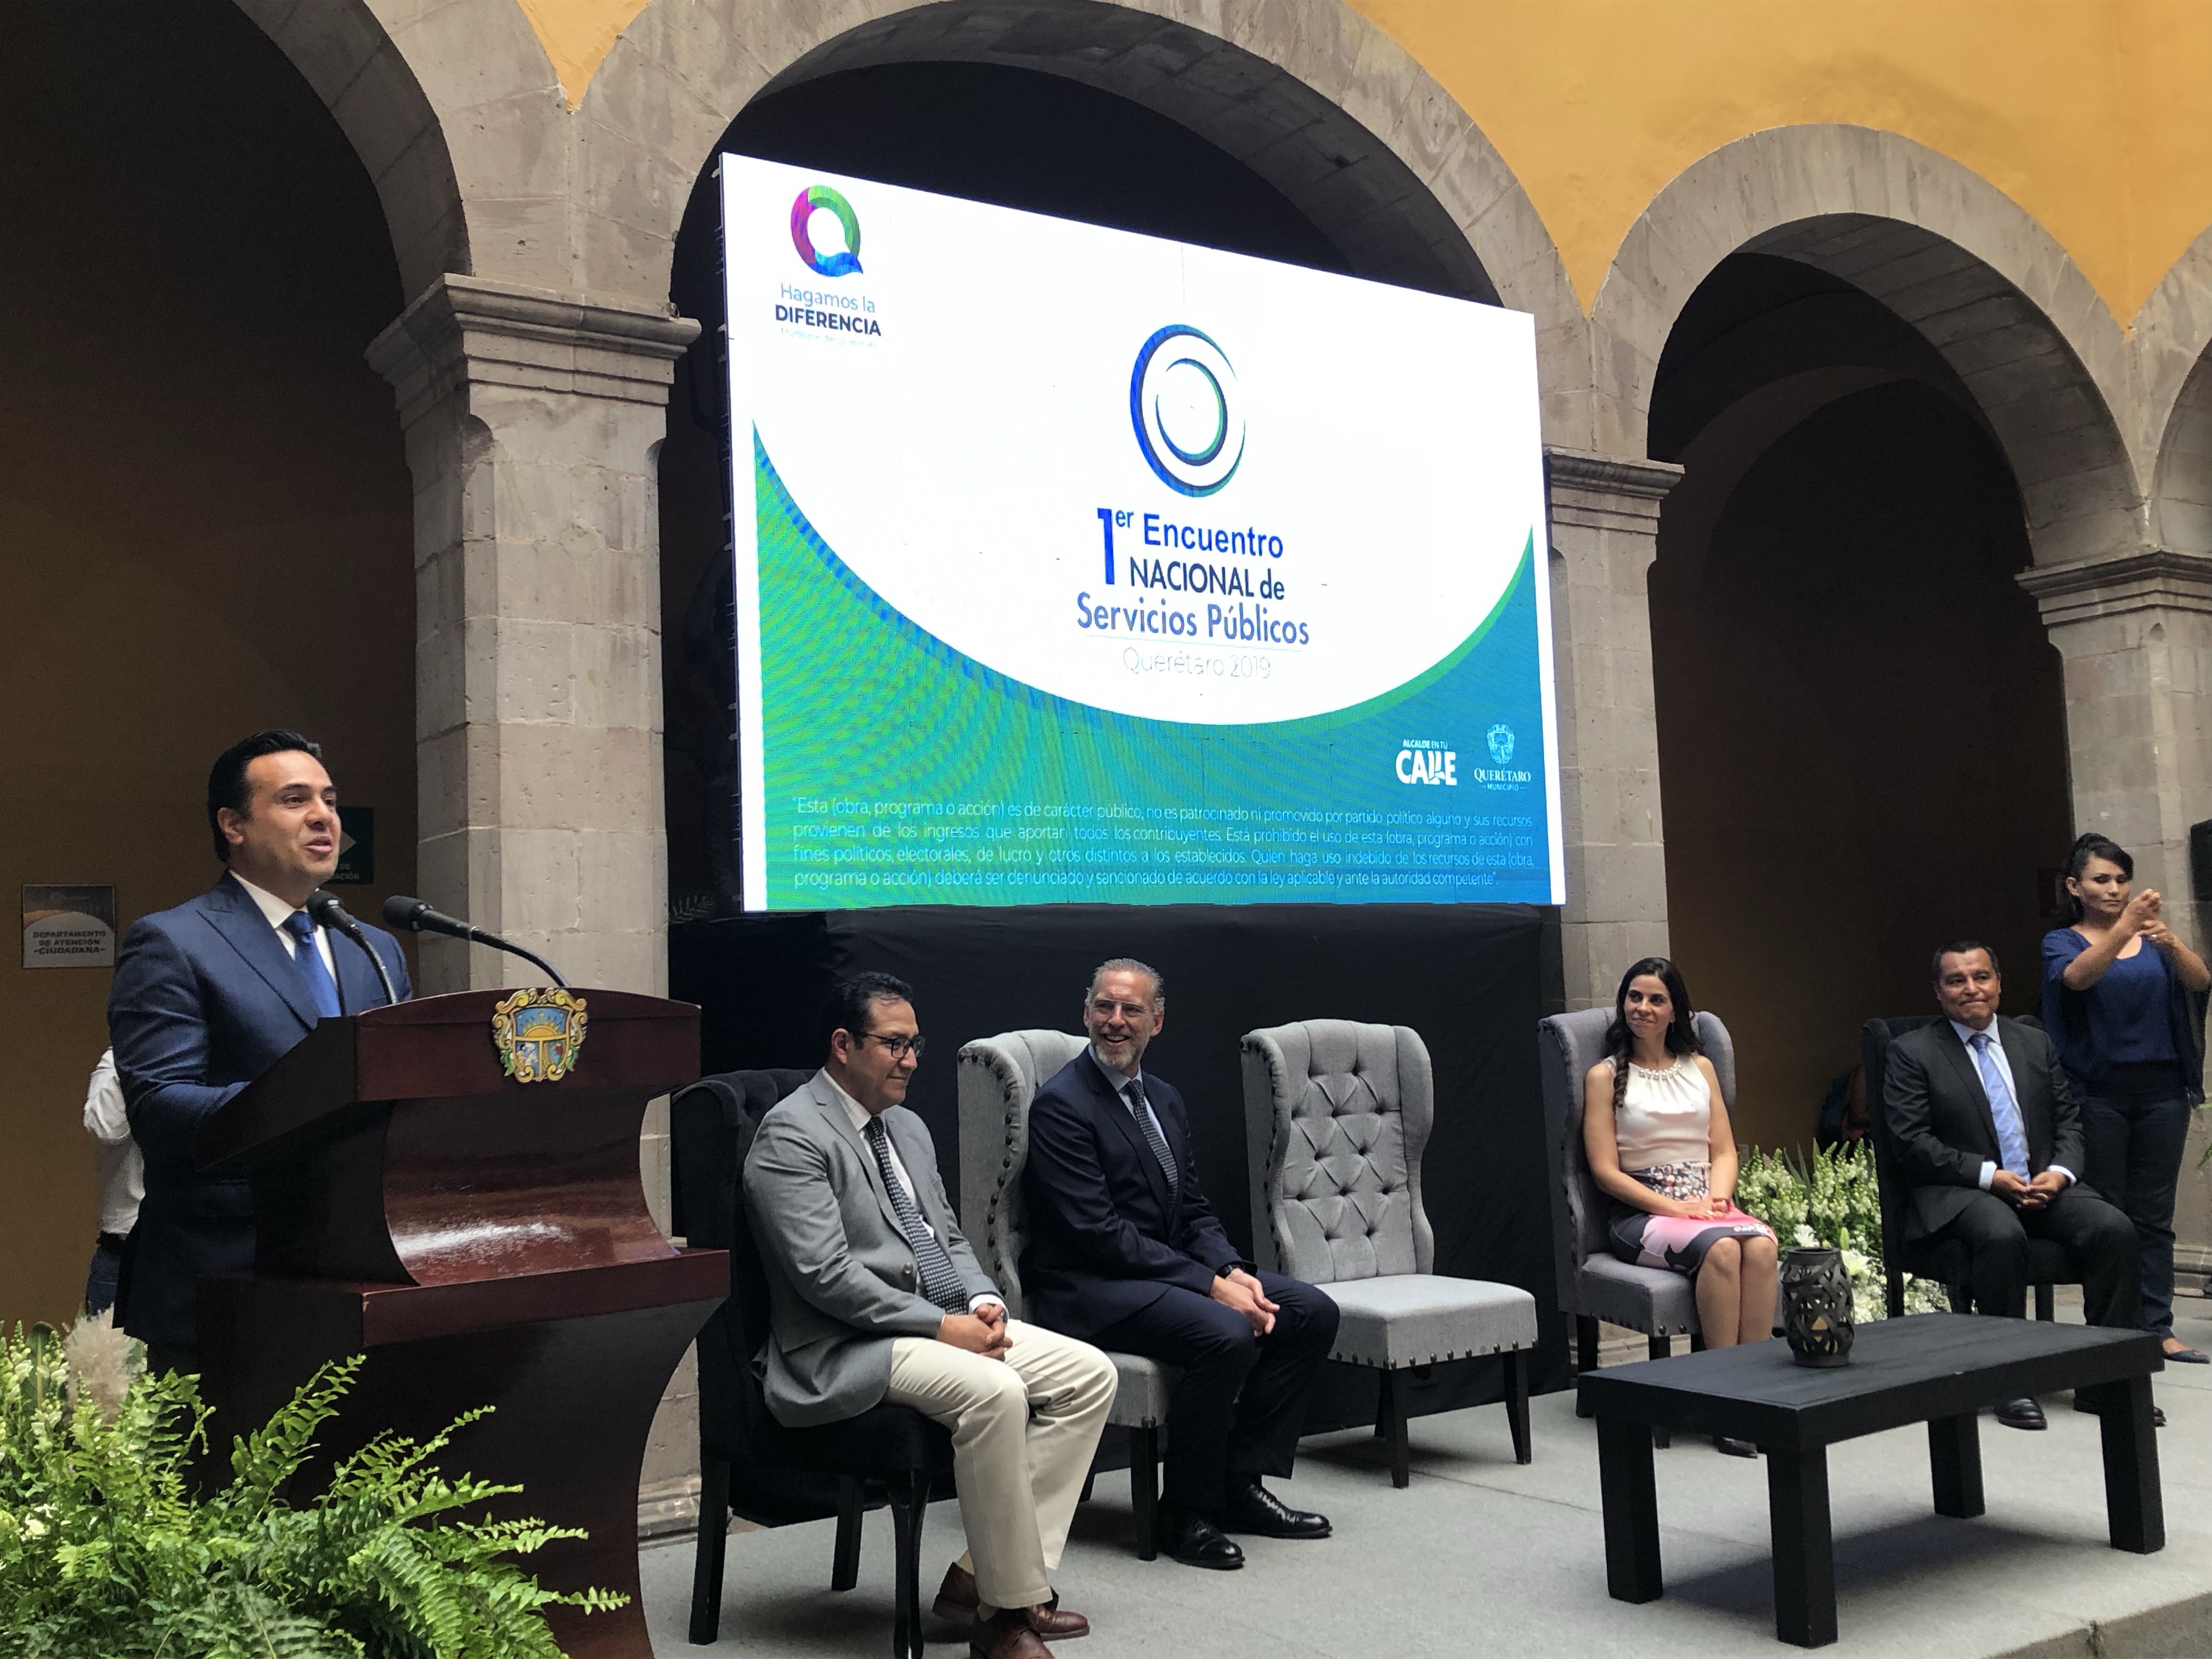  Luis Nava inaugura el Primer Encuentro Nacional de Servicios Públicos